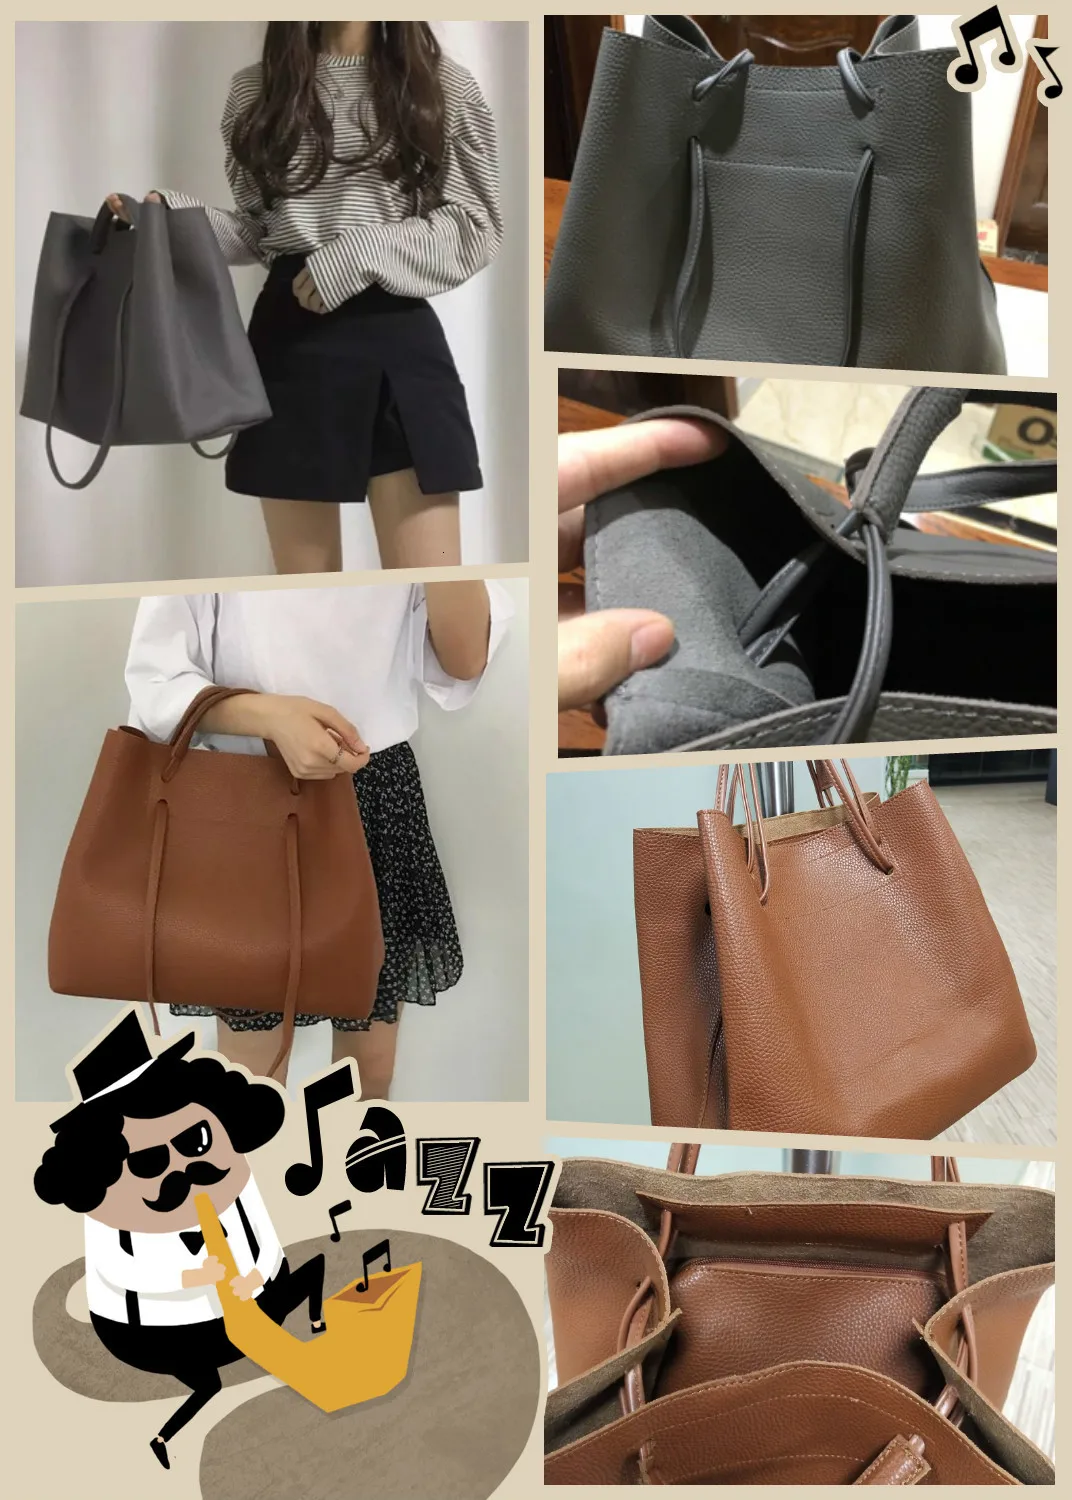 Модные женские сумки на плечо из искусственной кожи, дизайнерские сумки-мессенджеры, большая сумка для путешествий, высококачественные женские сумки